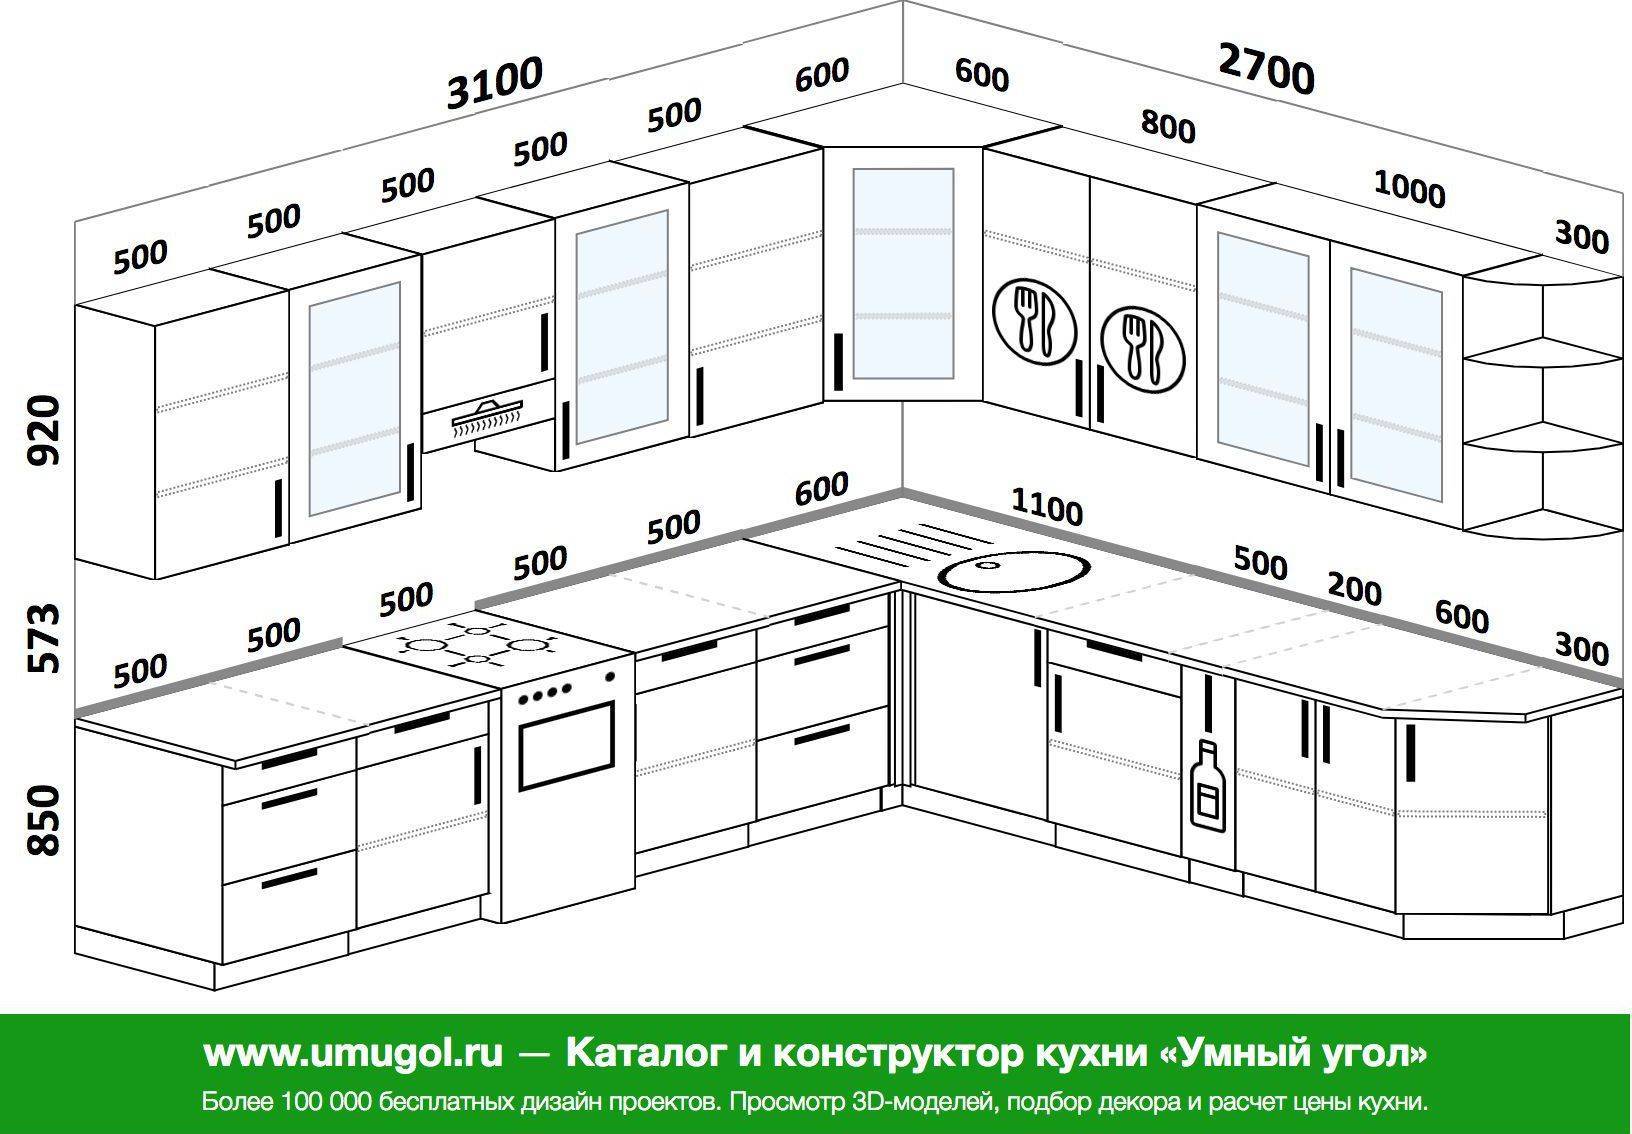 Правильная высота кухонных шкафов проверенная наукой